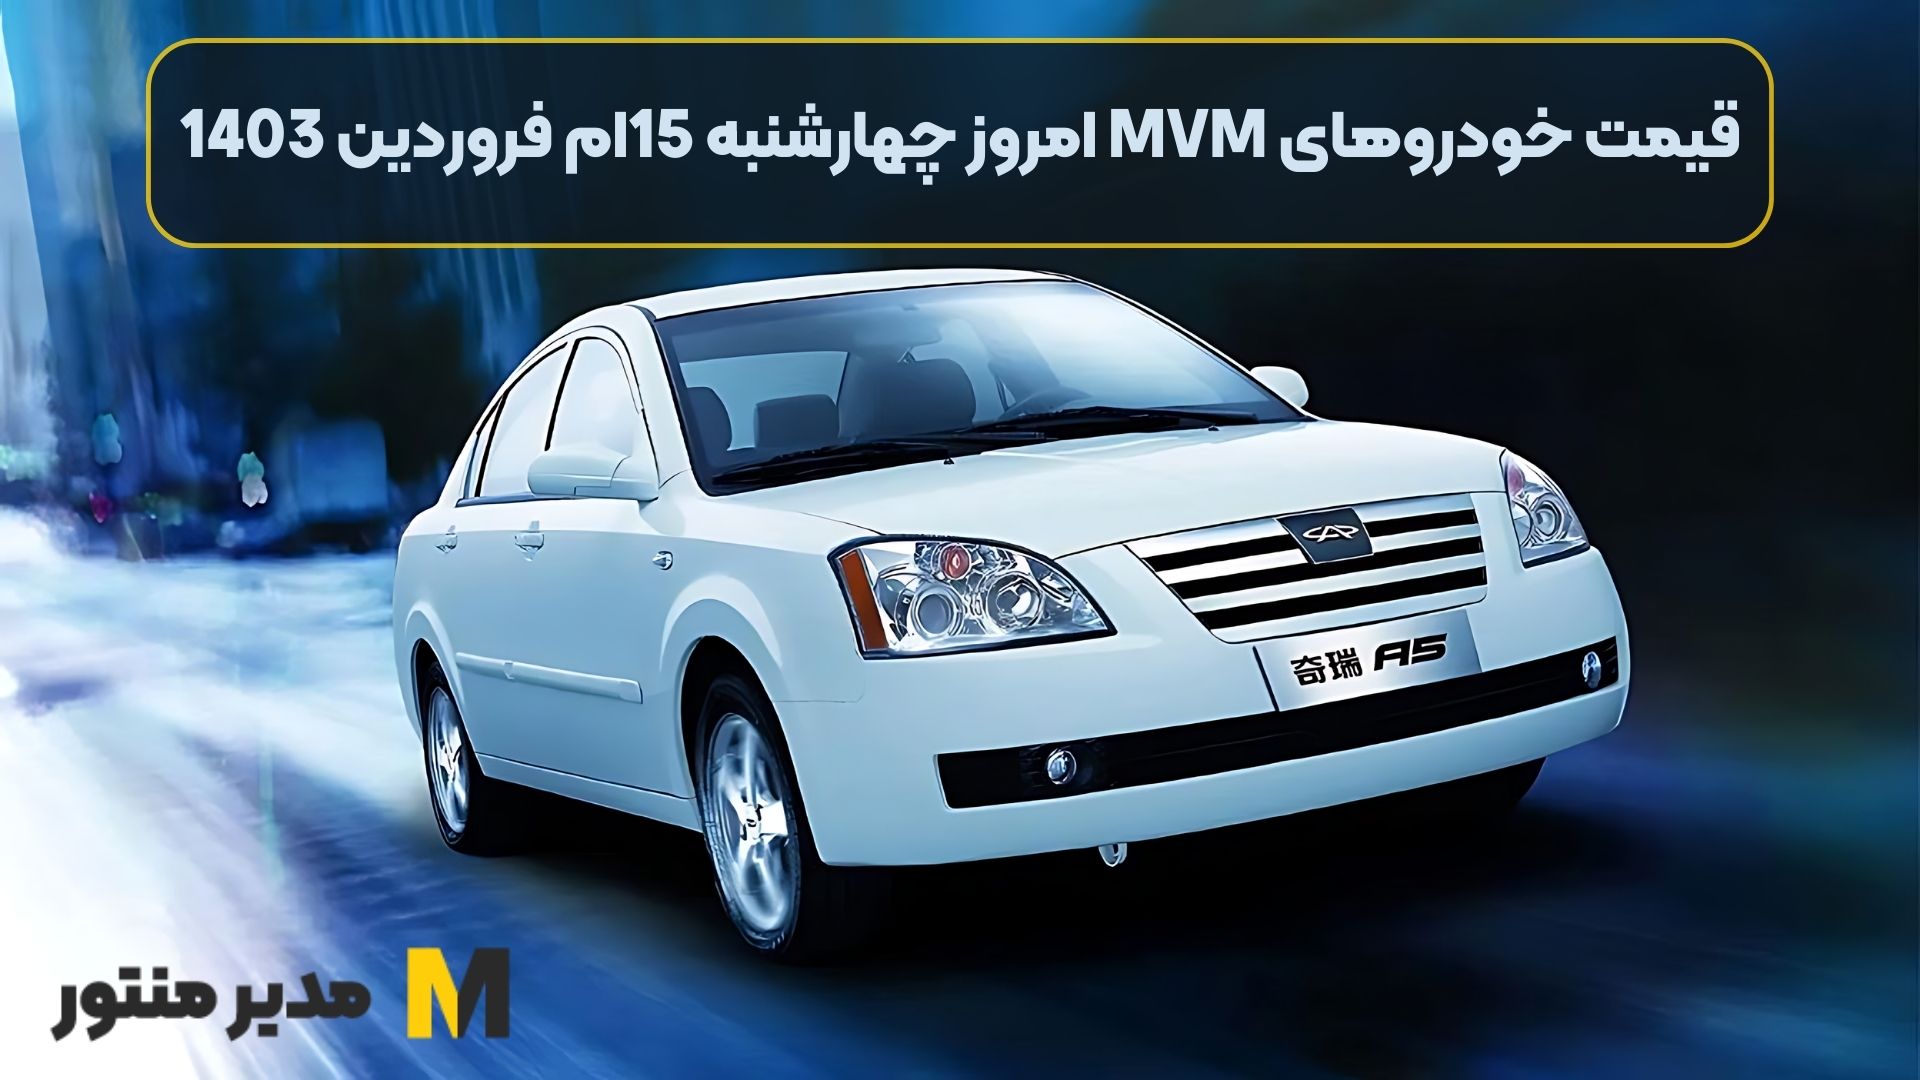 قیمت خودروهای MVM امروز چهارشنبه 15ام فروردین 1403